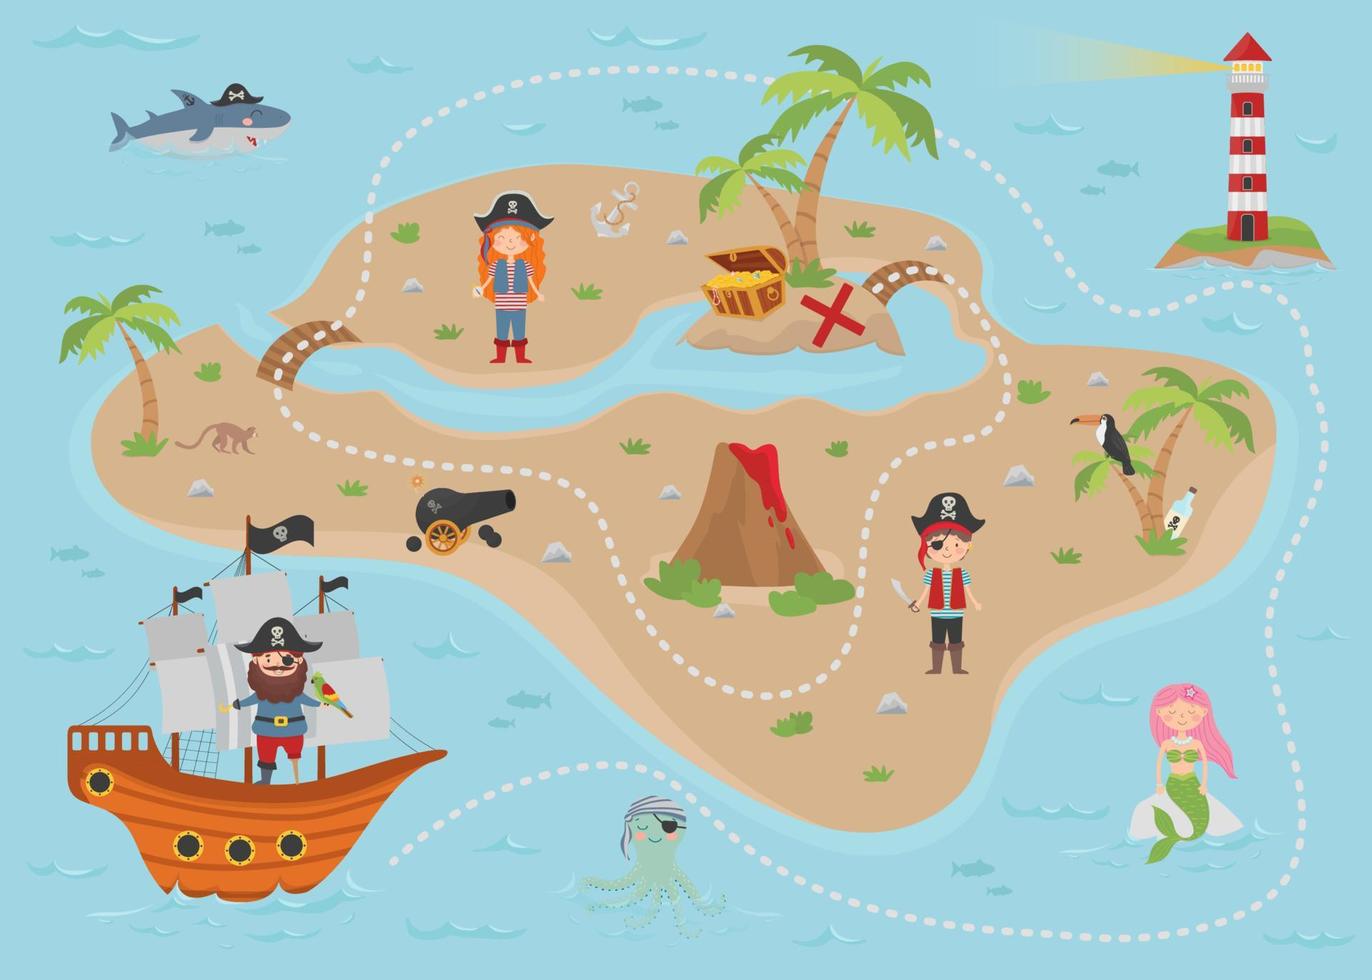 tecknad piratskattkarta för barn. Kartan har en söt sjöjungfru, pirater, en bläckfisk, en haj, en fyr, en skattö, en kista och ett skepp. vektor